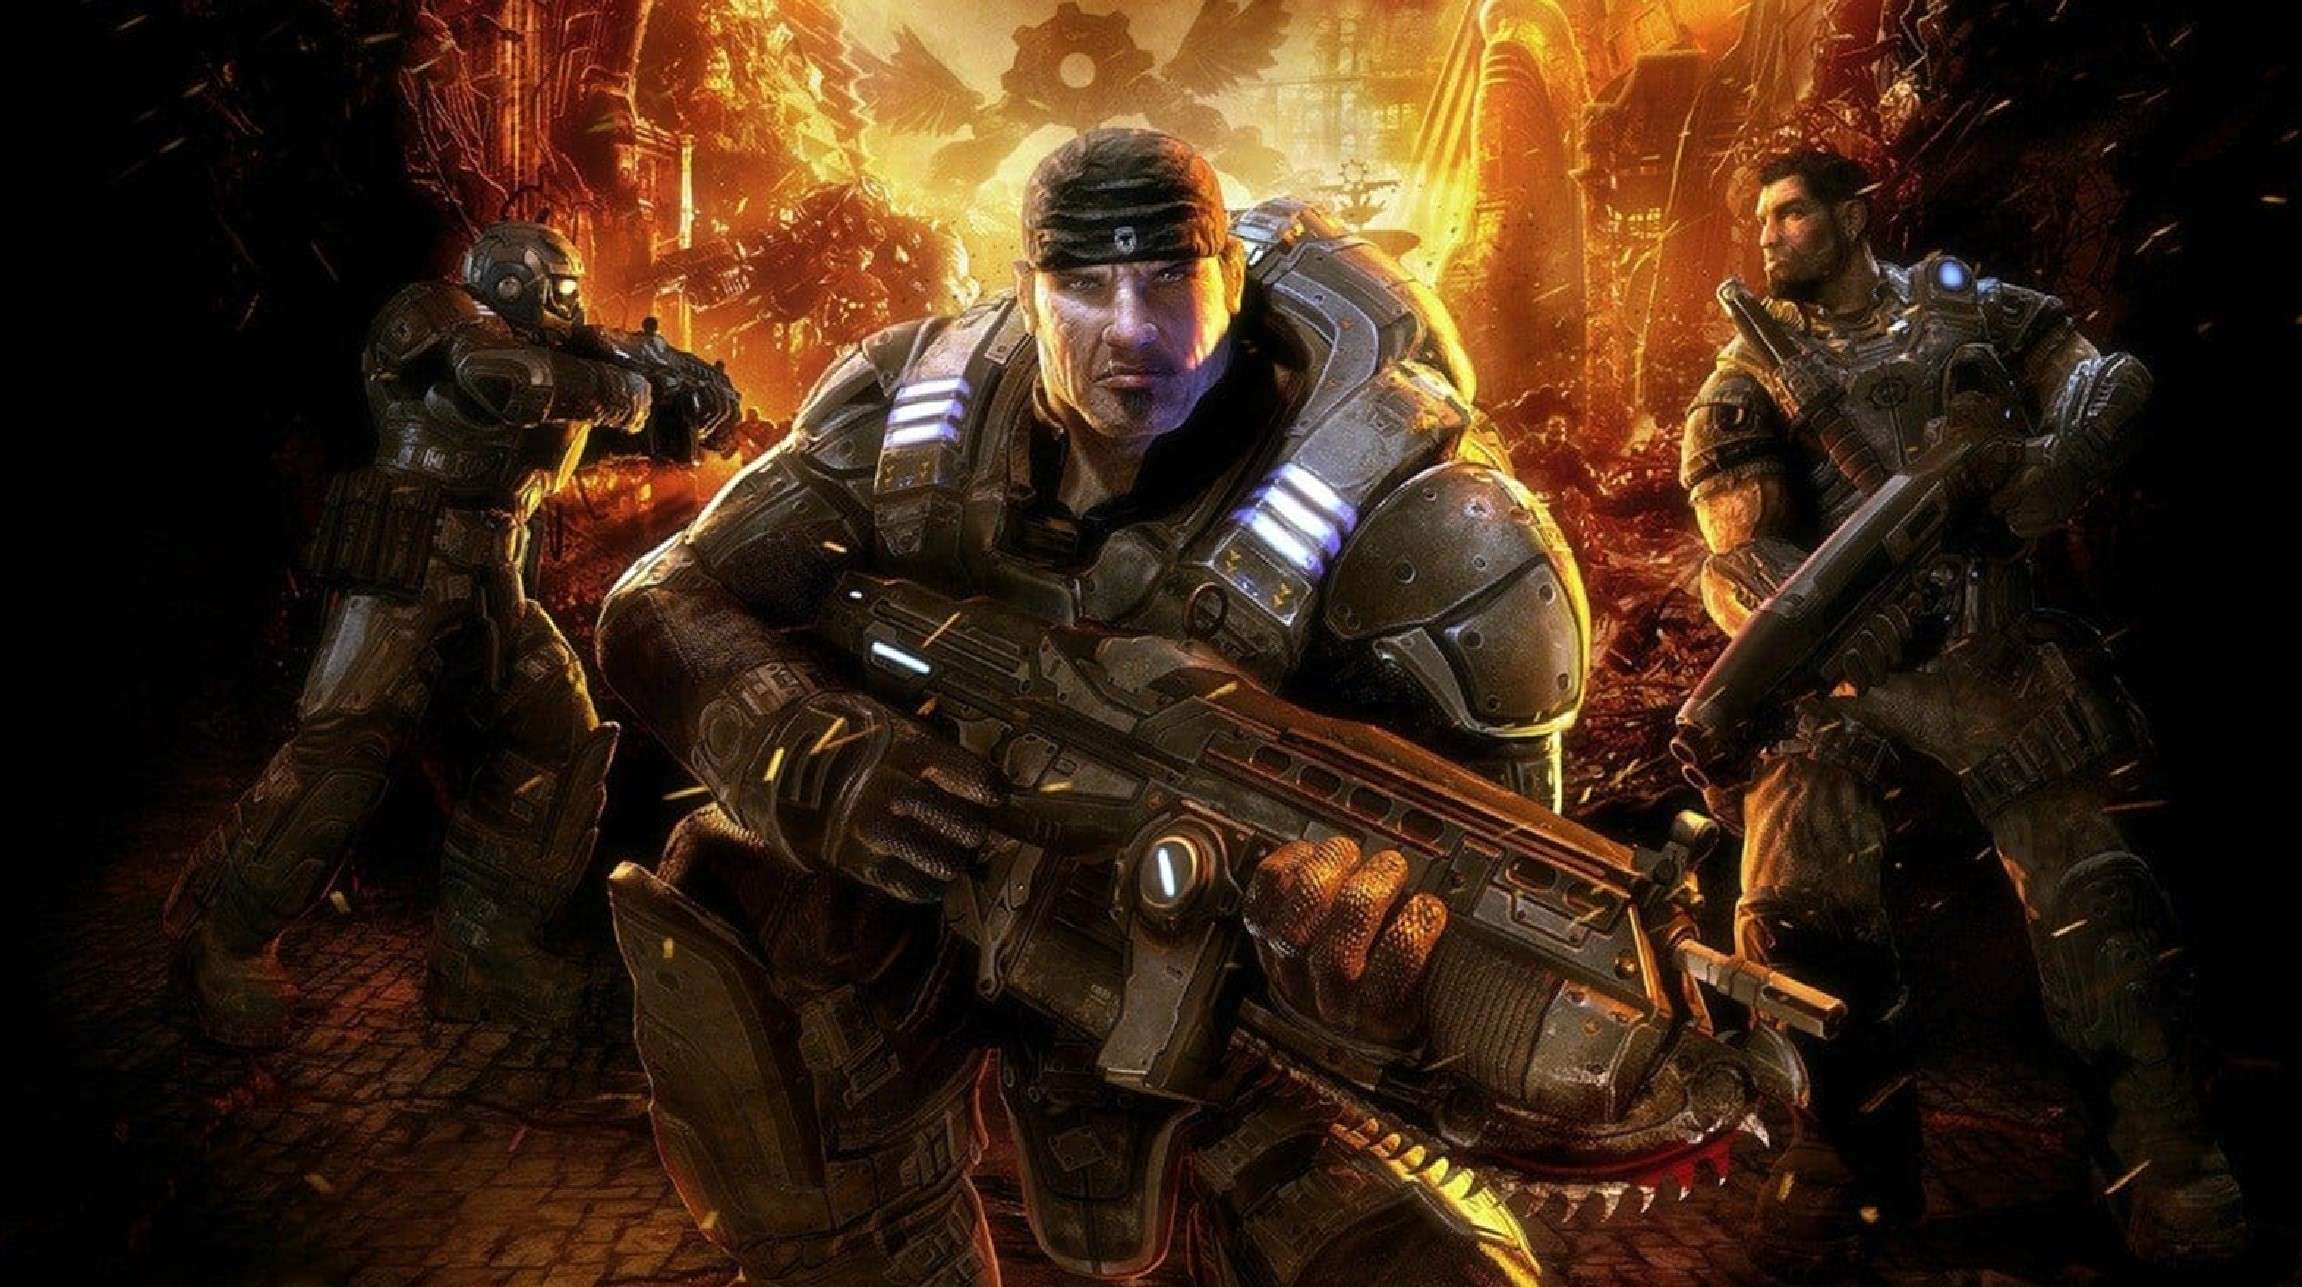 Gears of War cover art